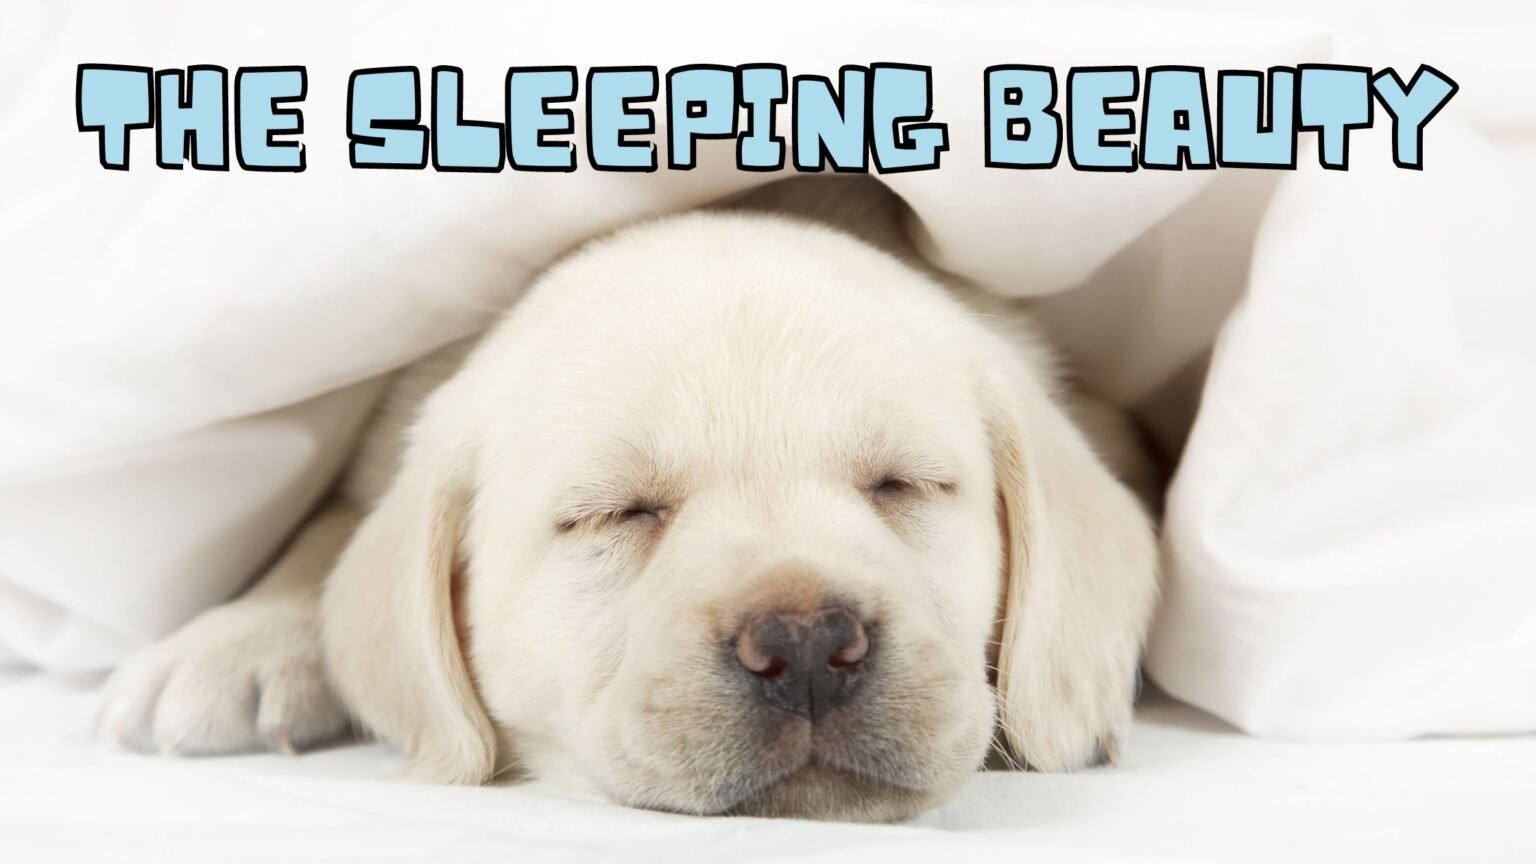 WHY DO DOGS SLEEP SO MUCH